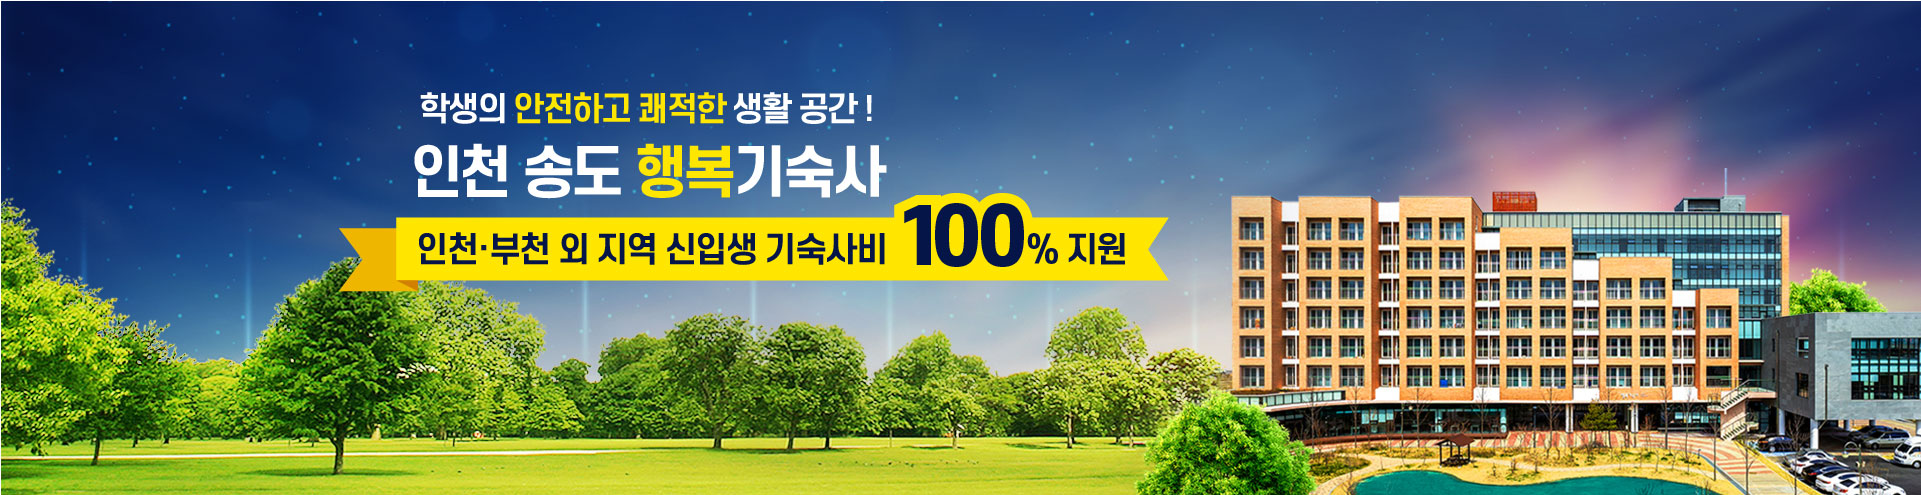 학생의 안전하고 쾌적한 생활공간! 인천 송도 행복기숙사 인천·부천 외 지역 신입생 기숙사비 100% 지원